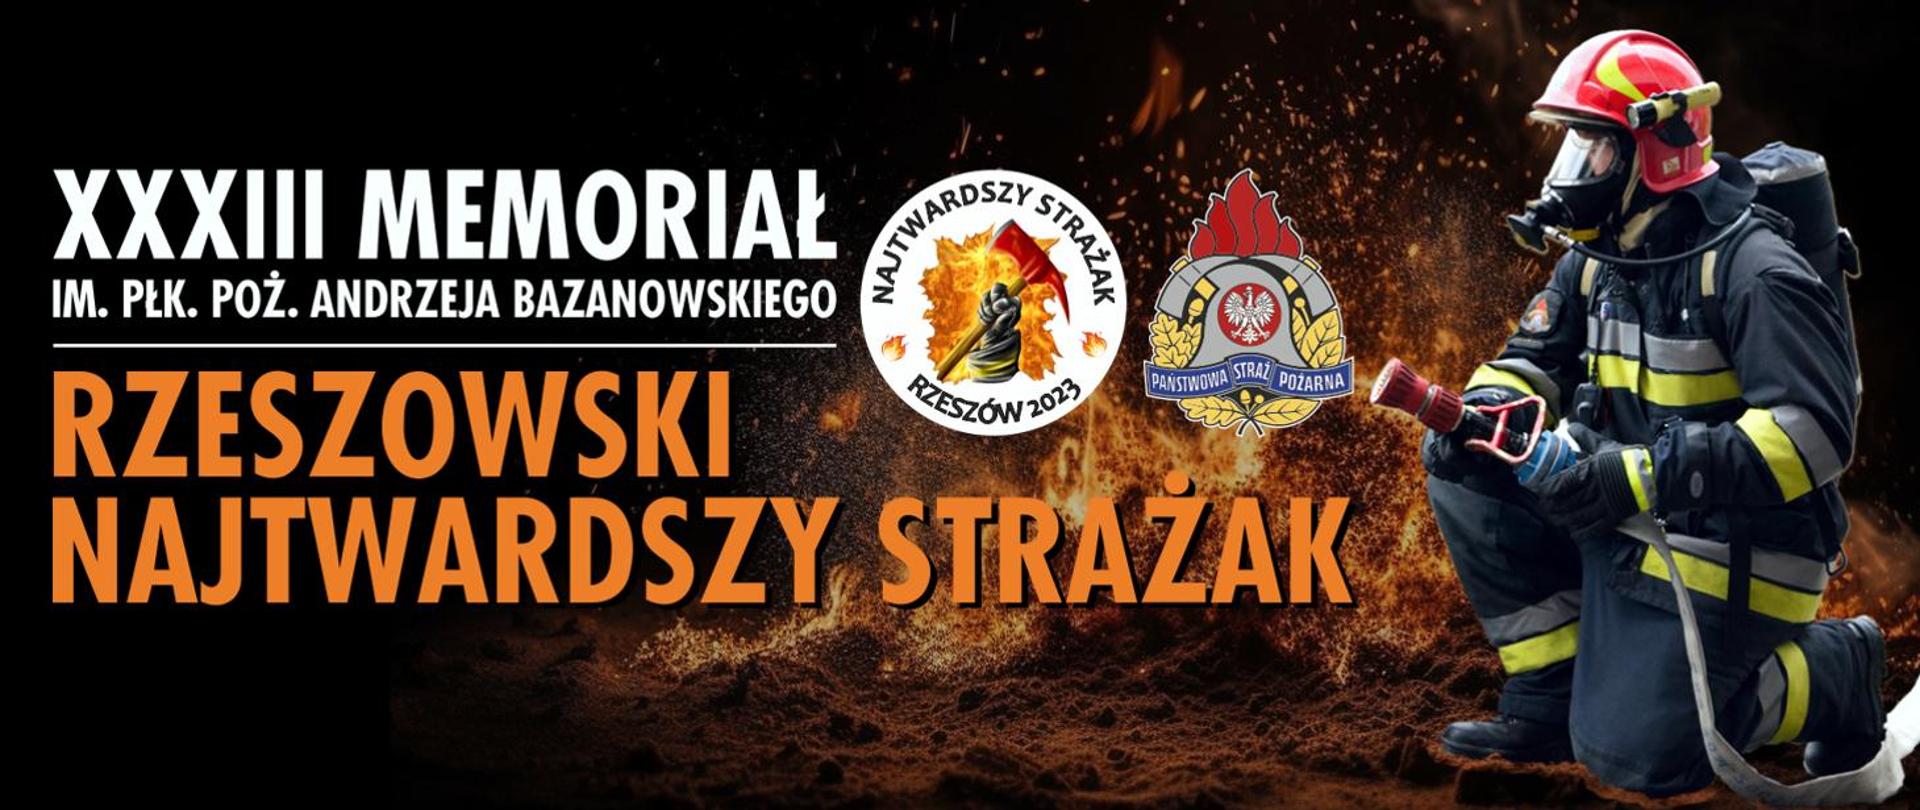 Zaproszenie na XXXIII Memoriał im. płk. poż. Andrzeja Bazanowskiego „Rzeszowski Najtwardszy Strażak”